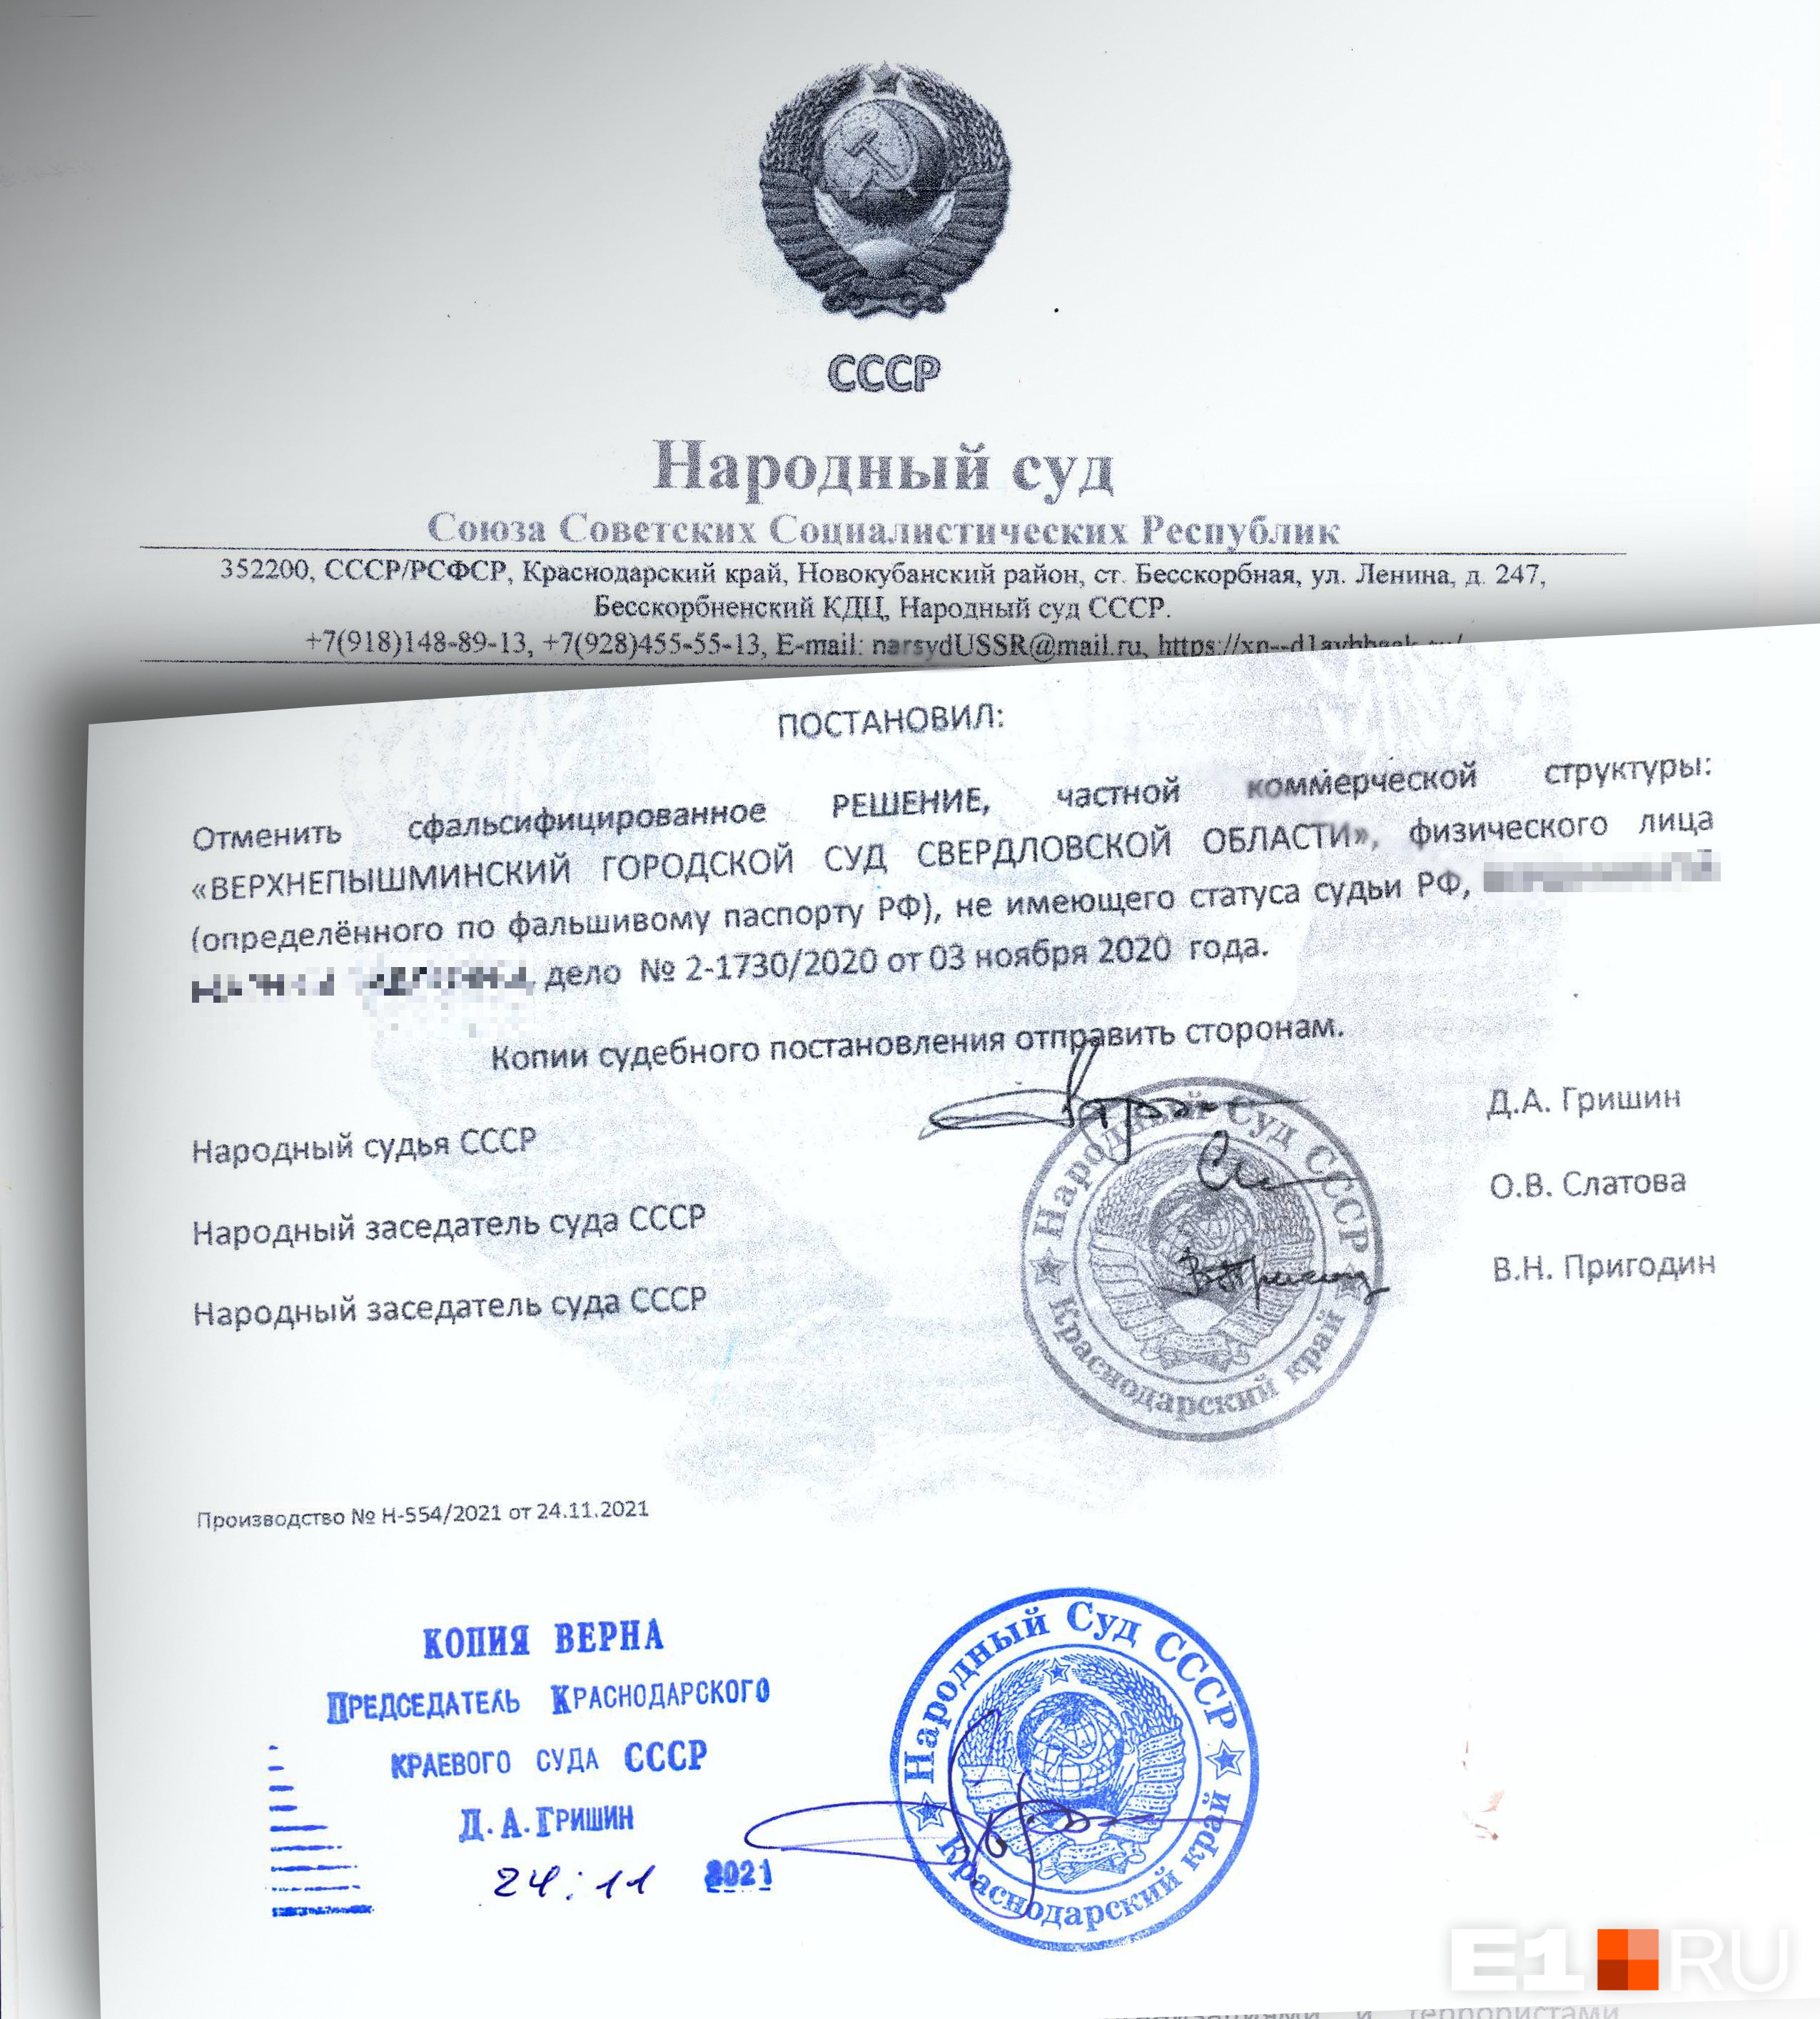 «Народный суд СССР» «отменяет» решения российских судов